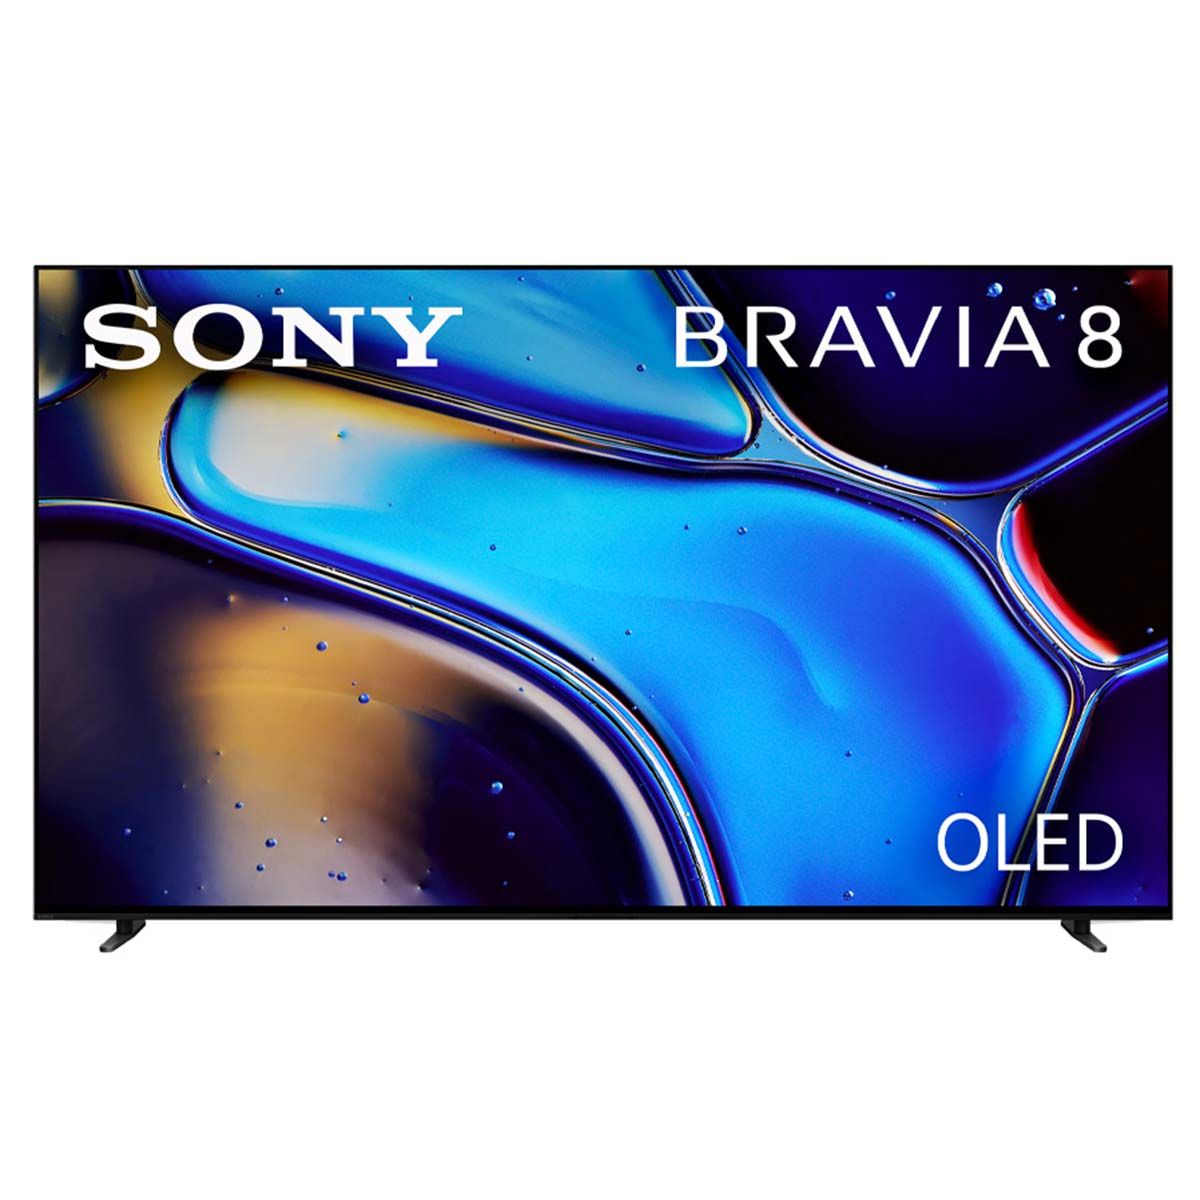 Sony BRAVIA 8